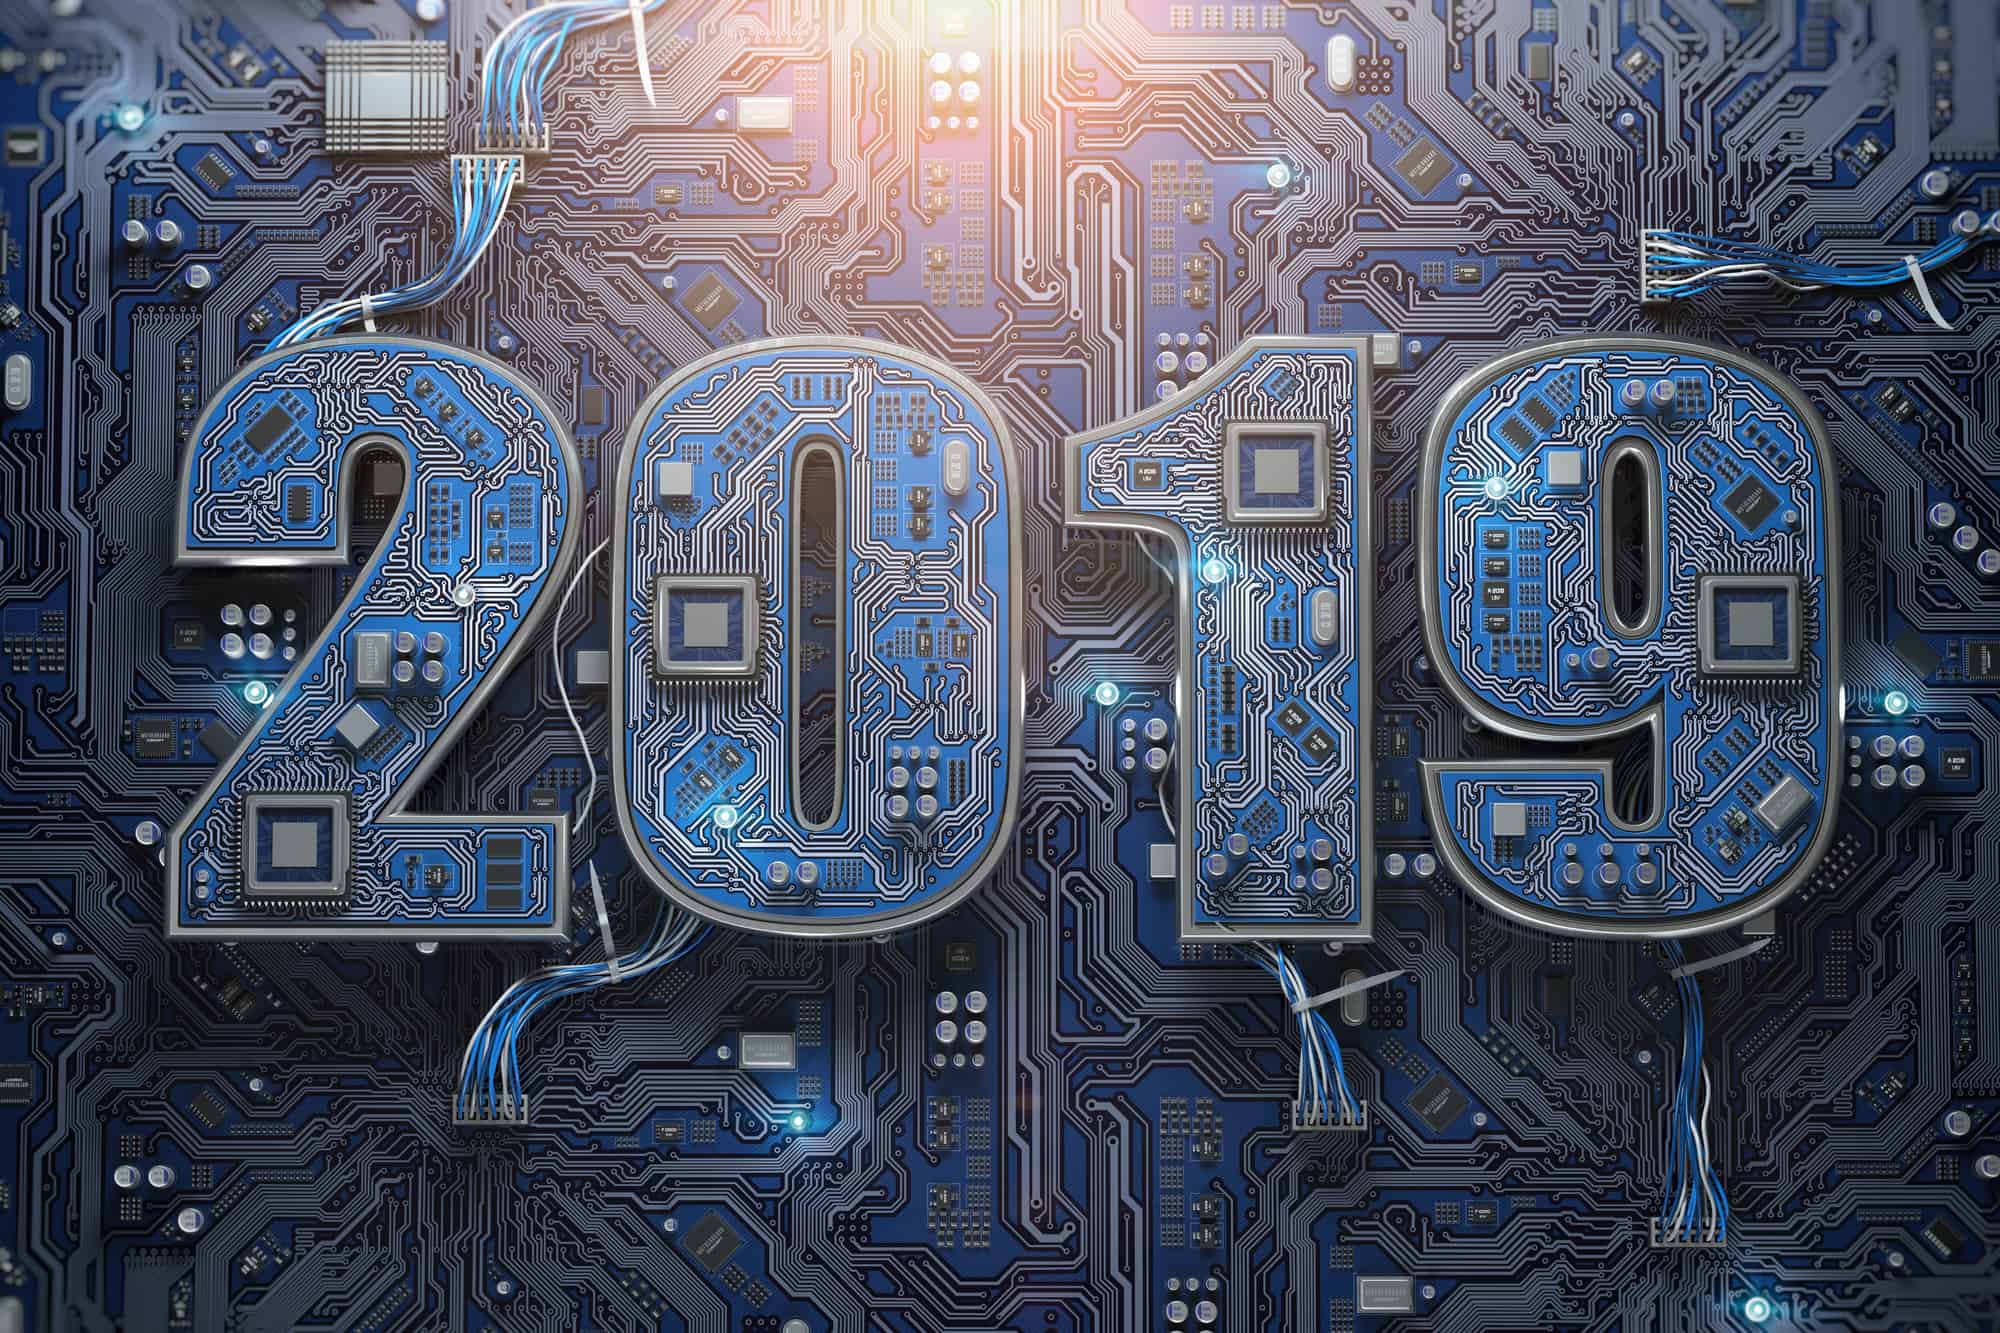 2019 auf Leiterplatte oder Hauptplatine mit CPU. Digitales Konzept für Computertechnologie und Internetkommunikation. Frohes neues Jahr 2019. 3D-Illustration